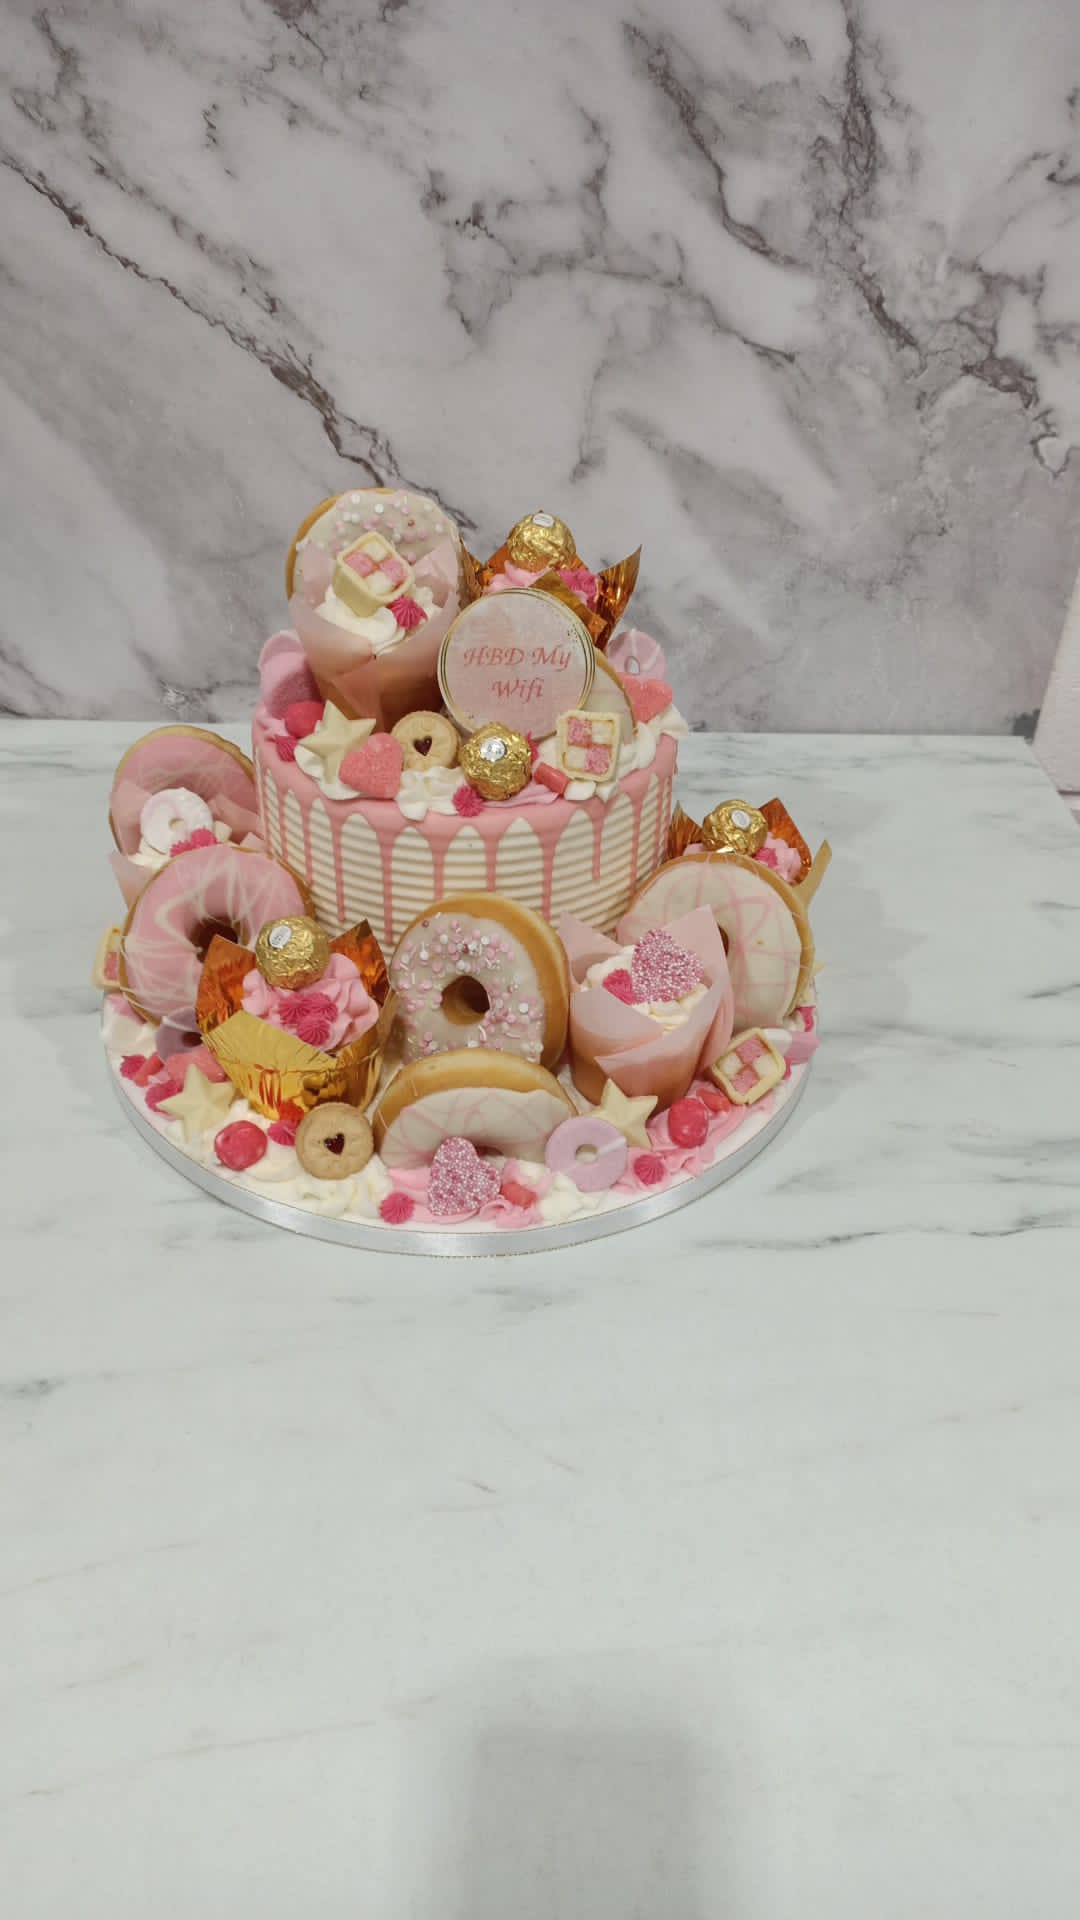 Barbie cake with 5 cupcakes - Avon Cake